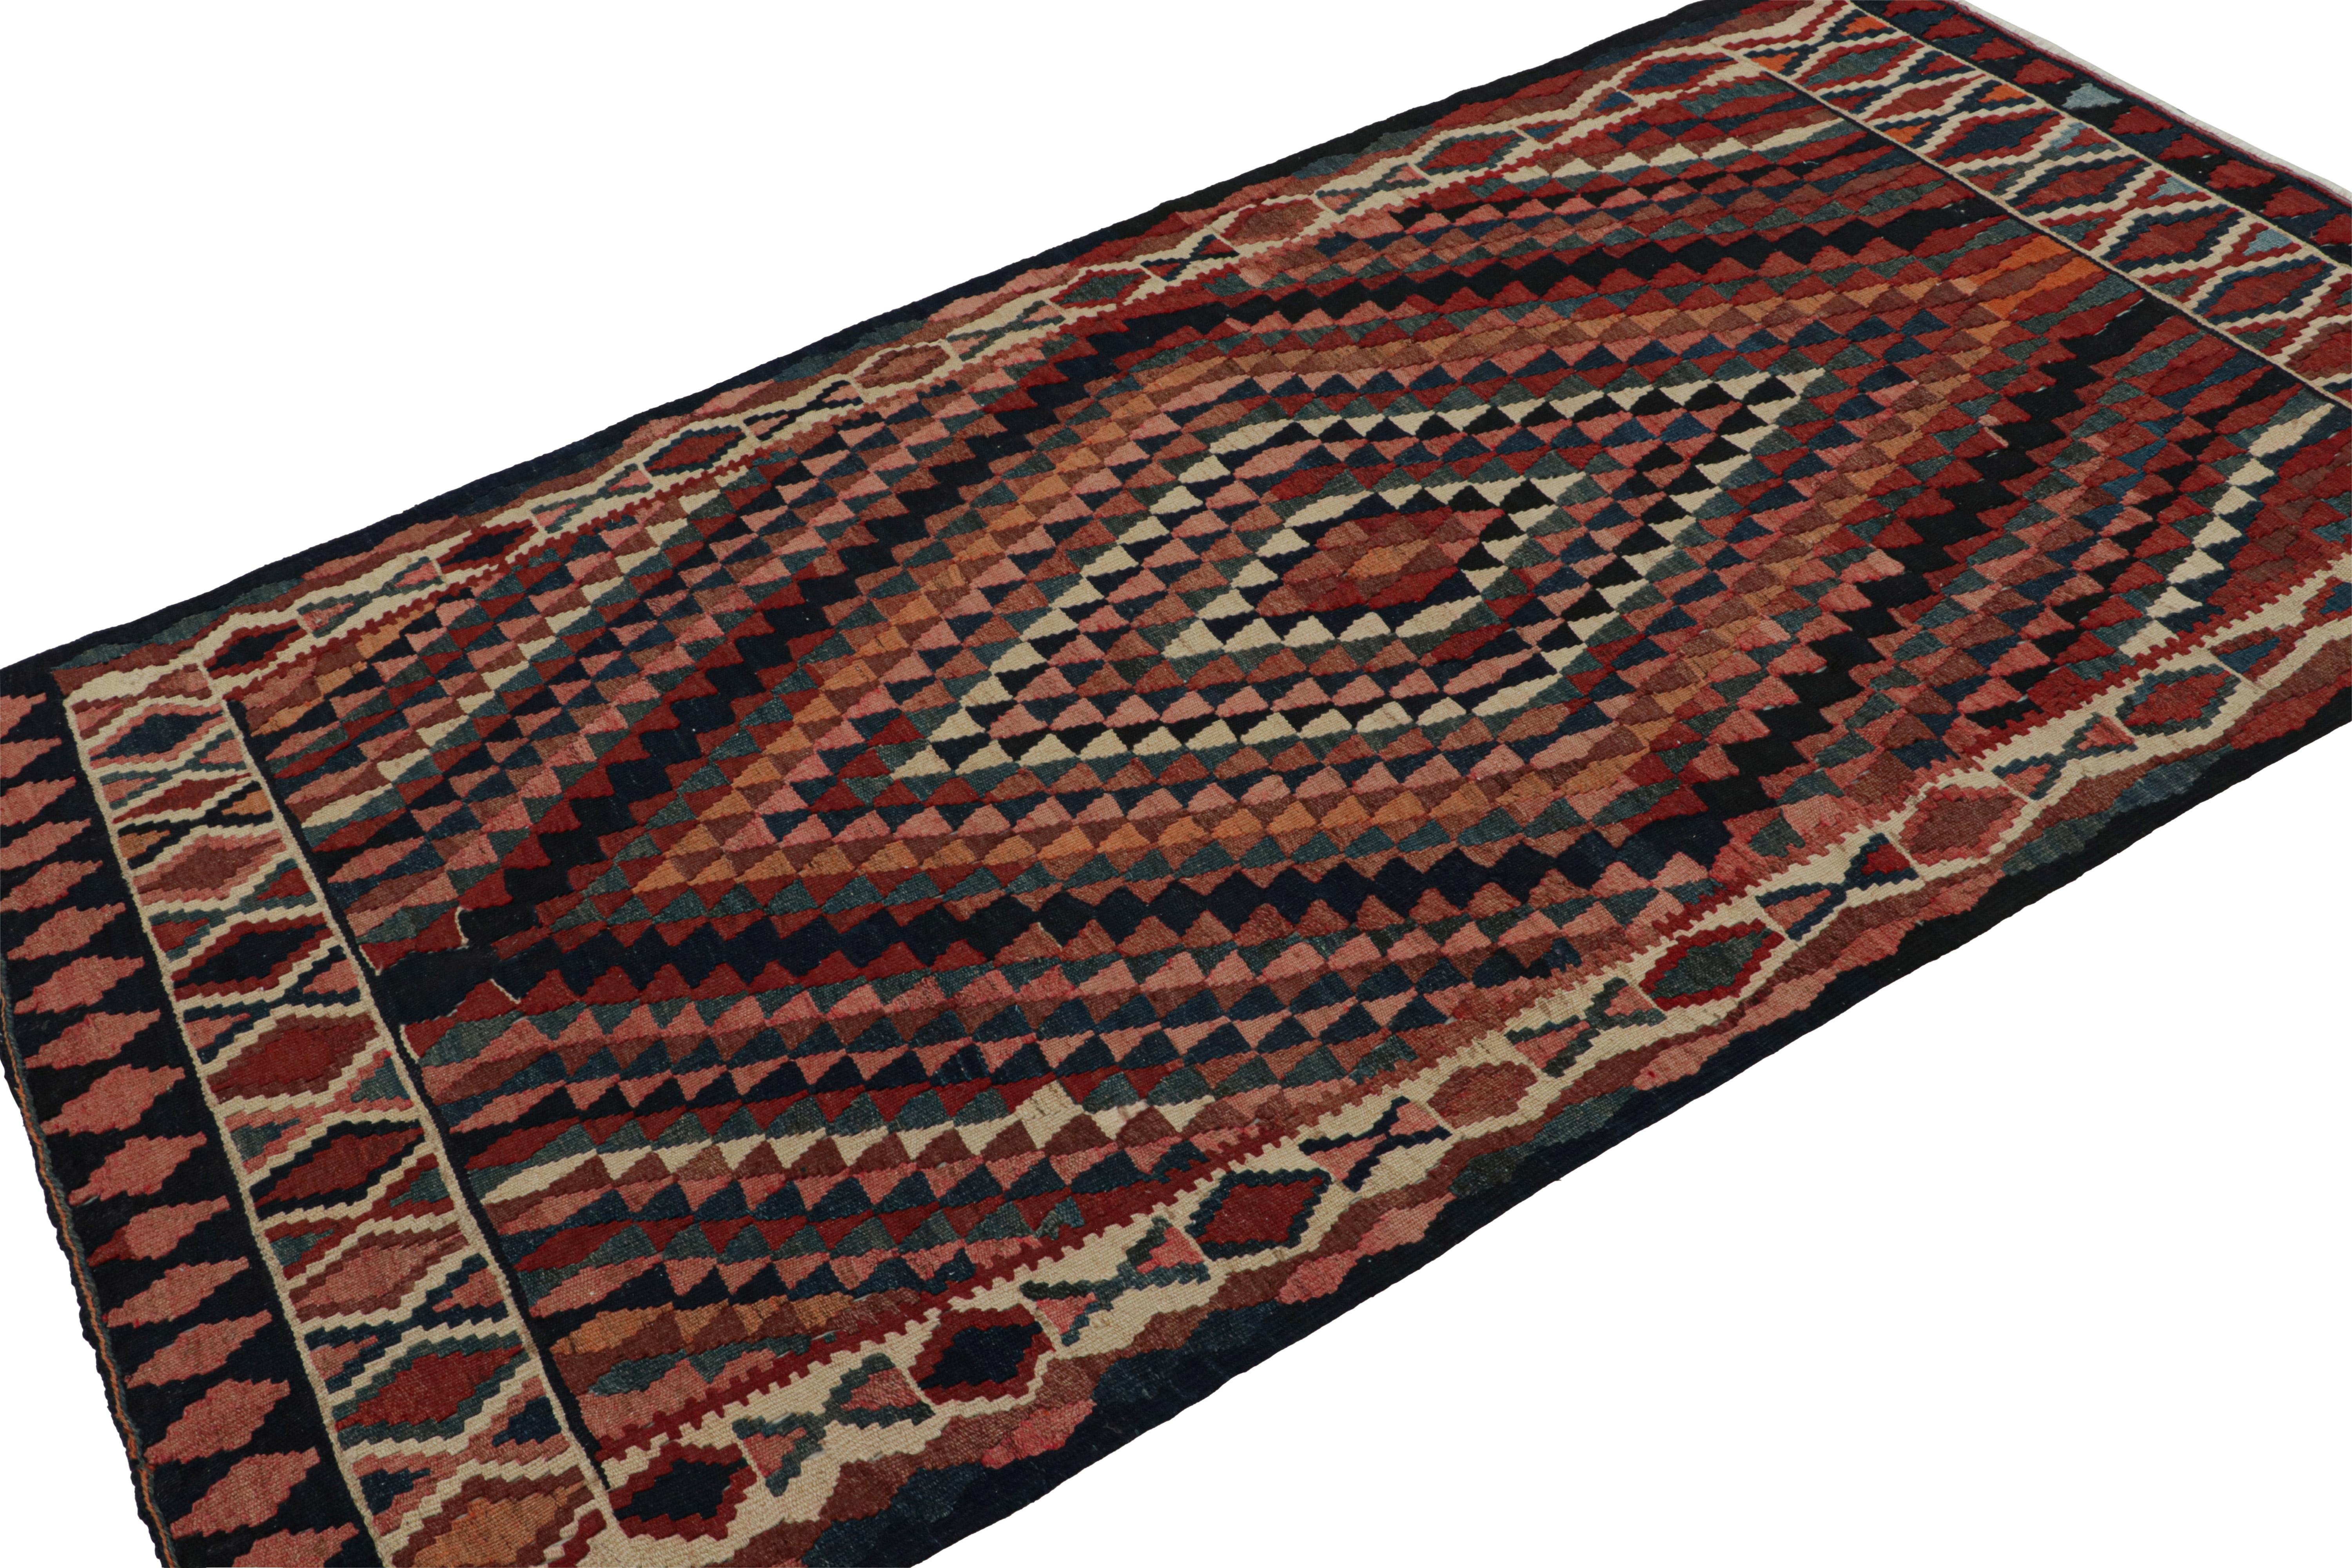 Dieser 4x8 Perser-Kilim im Vintage-Stil ist ein Tribal-Teppich aus der Mitte des Jahrhunderts - der jüngste Neuzugang in unserer Kilim & Flachgewebe-Kollektion. 

Über das Design:

Das um 1950-1960 in Wolle handgewebte Flachgewebe zeigt